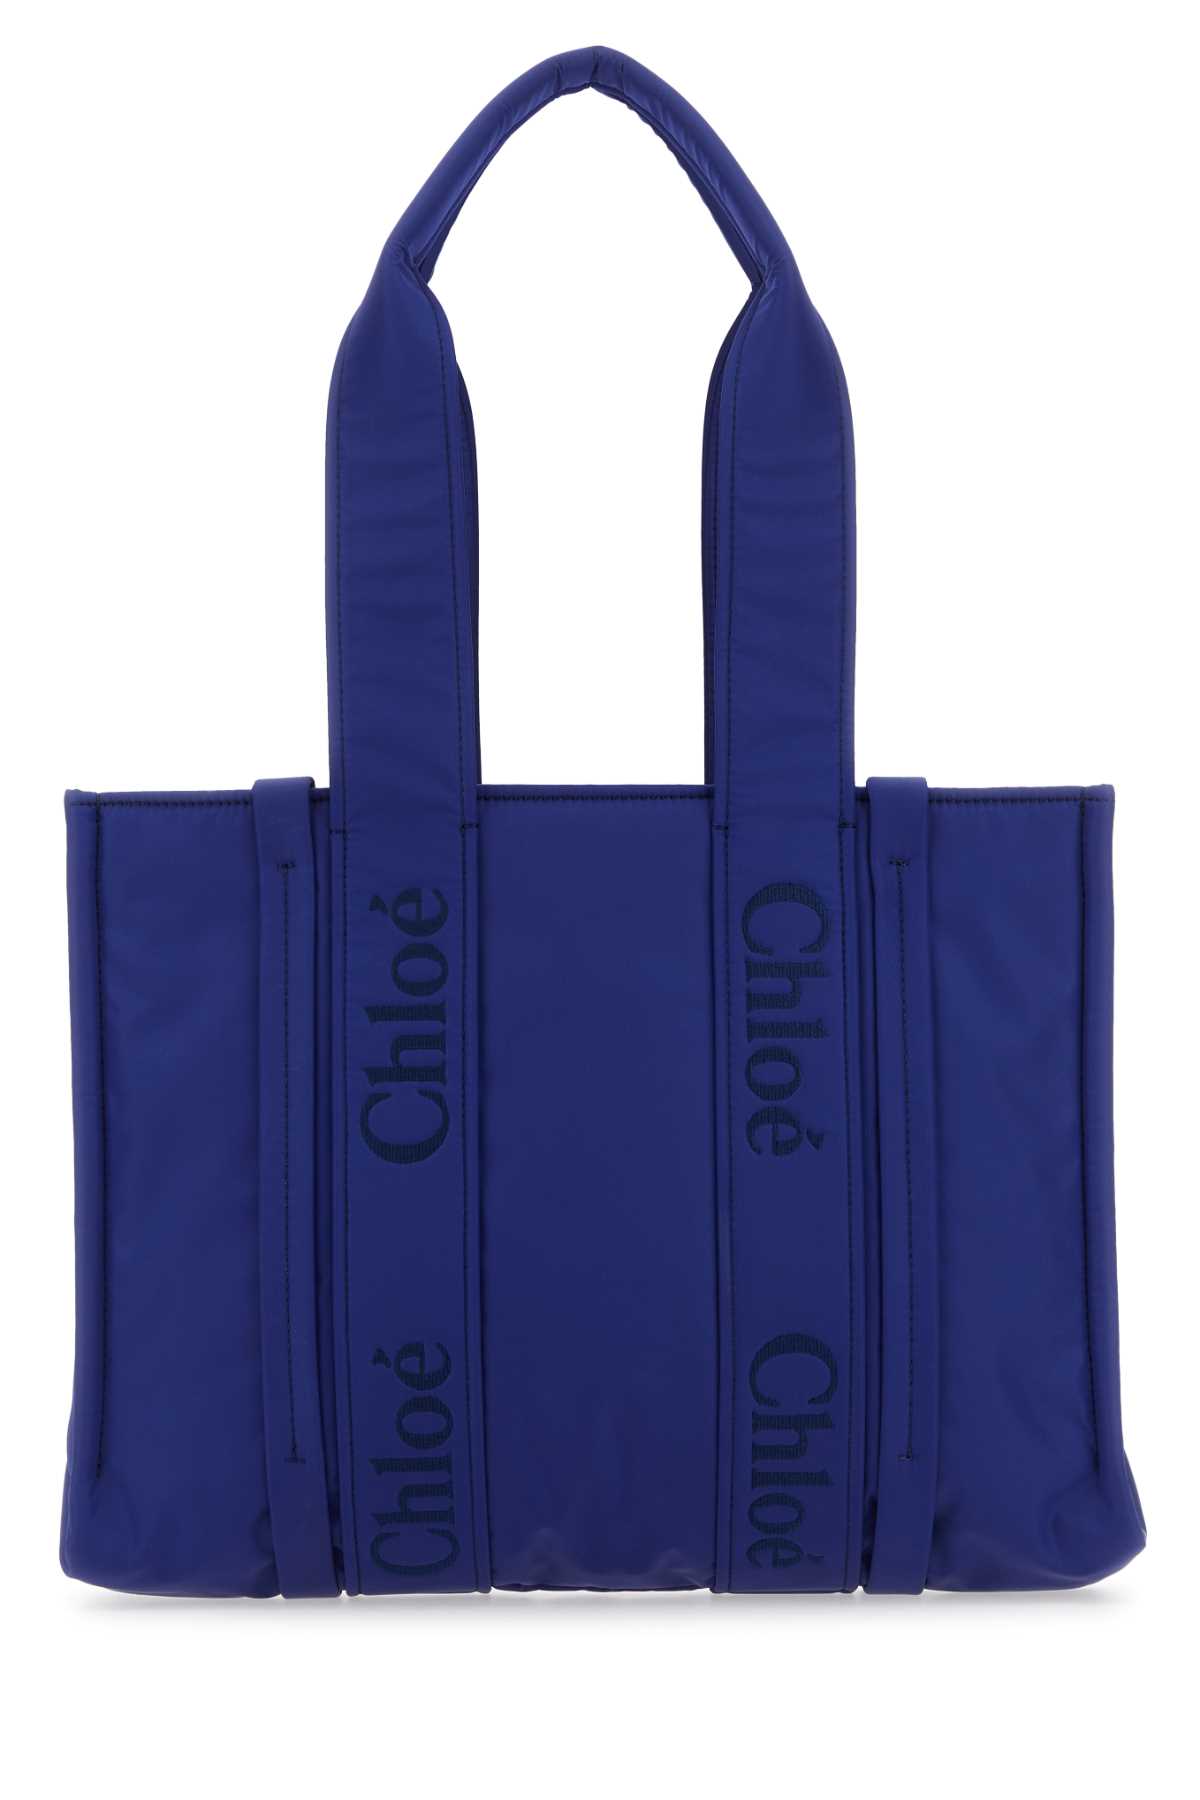 Chloé Electric Blue Nylon Medium Woody Shopping Bag